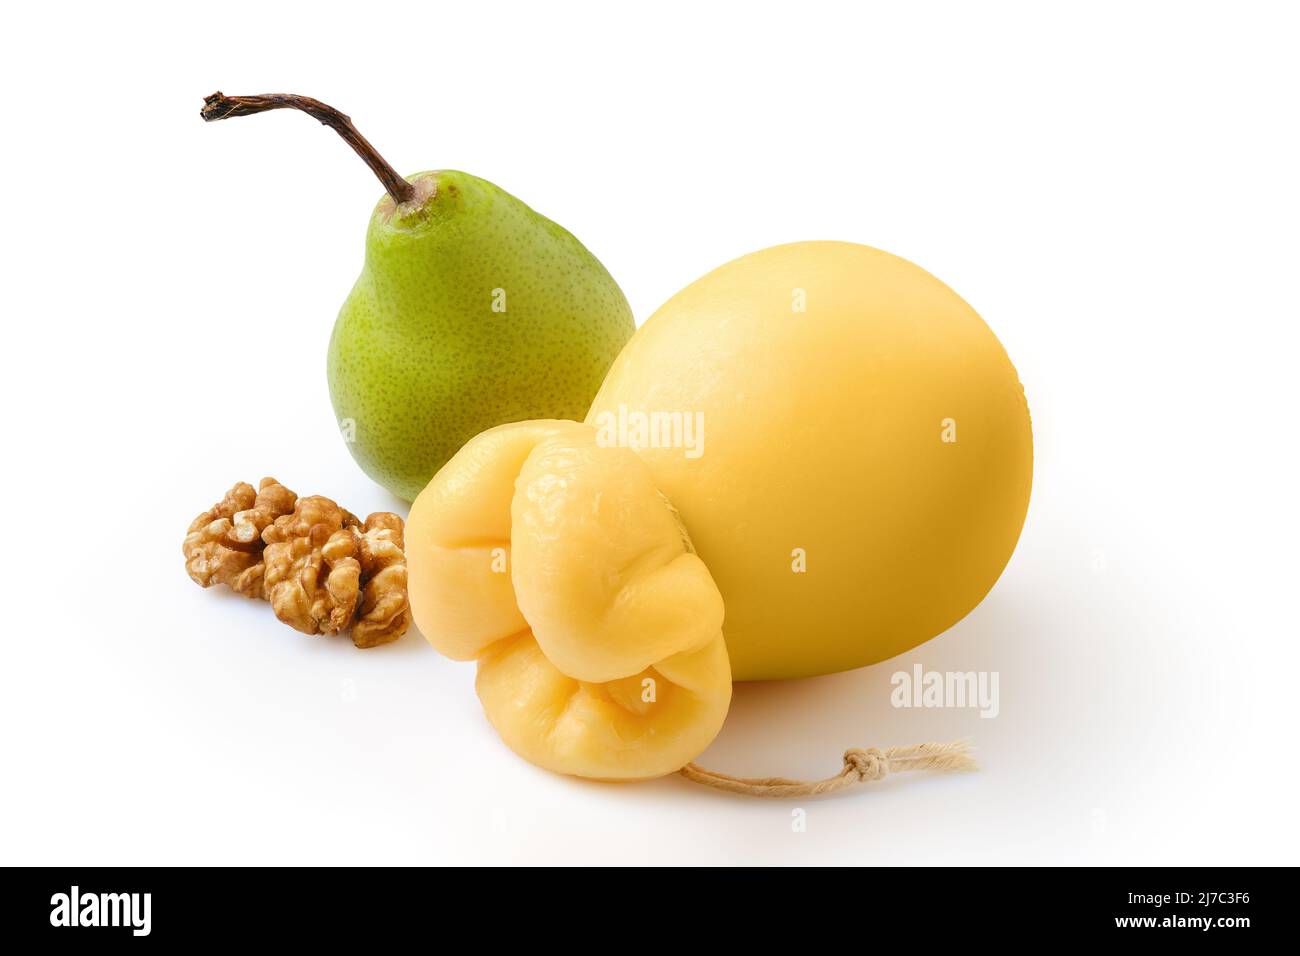 Caciocavallo tirato o scamorzza formaggio giallo italiano con pera e noce isolato su sfondo bianco Foto Stock